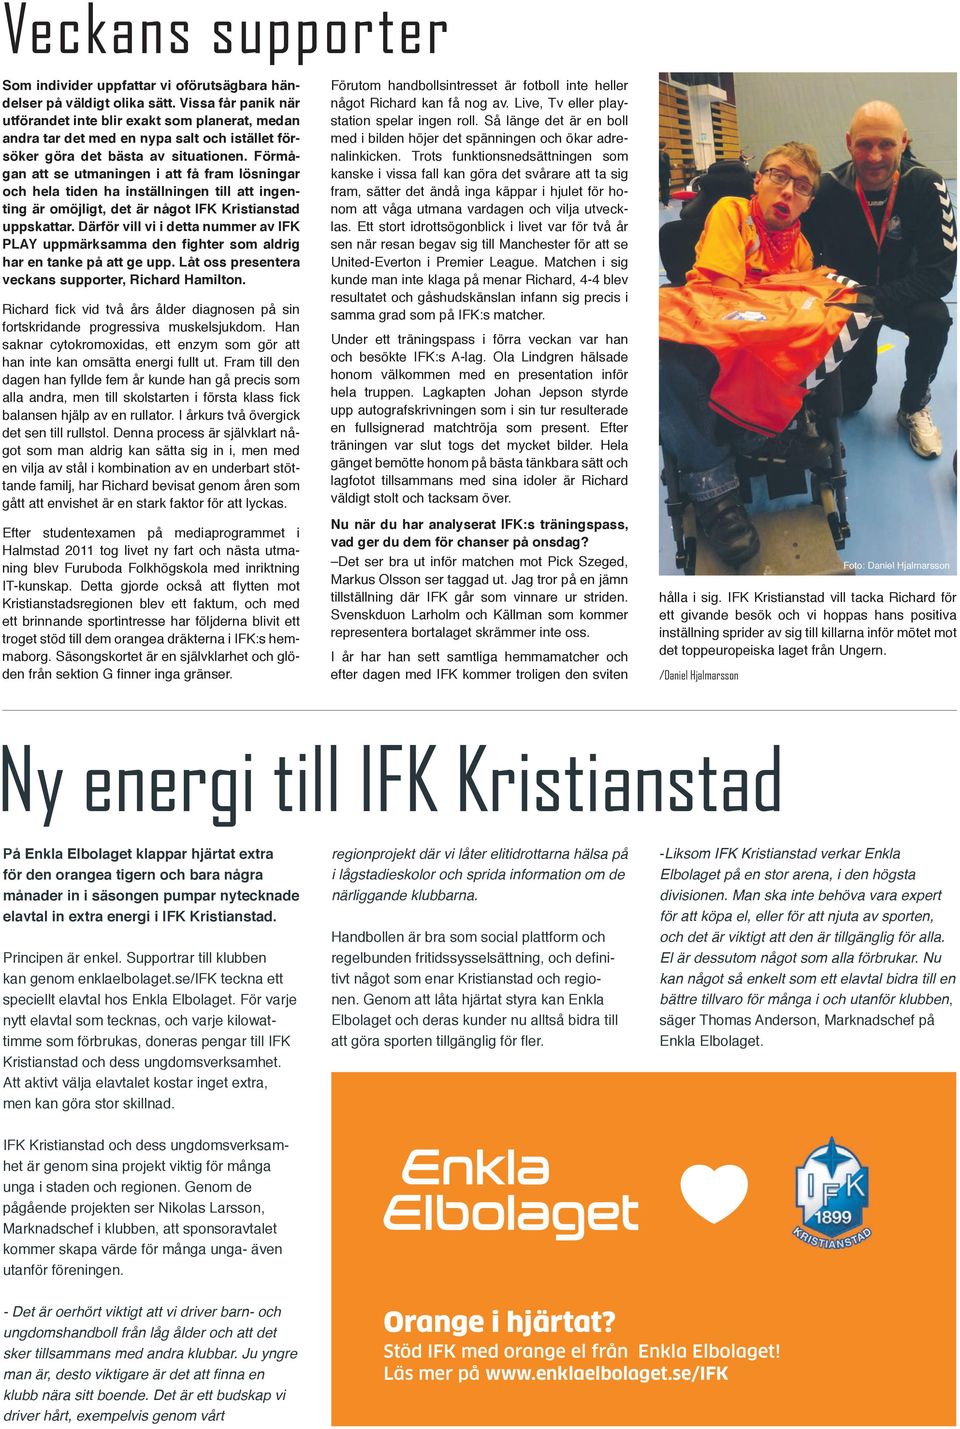 Förmågan att se utmaningen i att få fram lösningar och hela tiden ha inställningen till att ingenting är omöjligt, det är något IFK Kristianstad uppskattar.